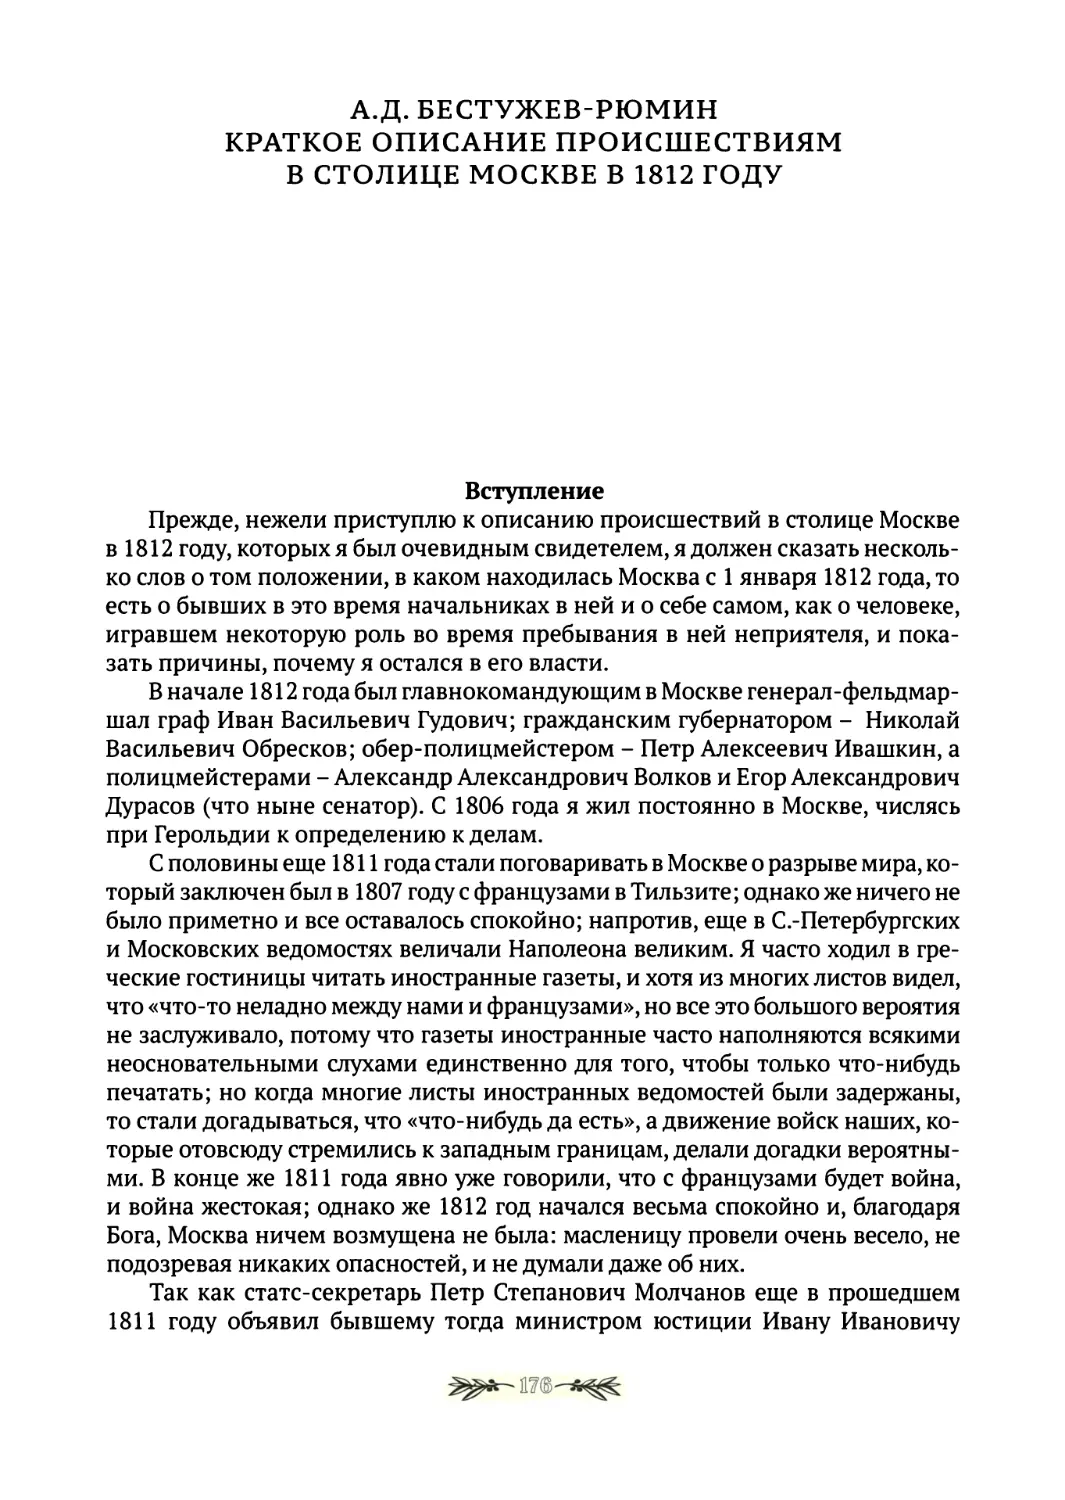 А.Д.Бестужев-Рюмин. Краткое описание происшествиям в столице Москве в 1812г.